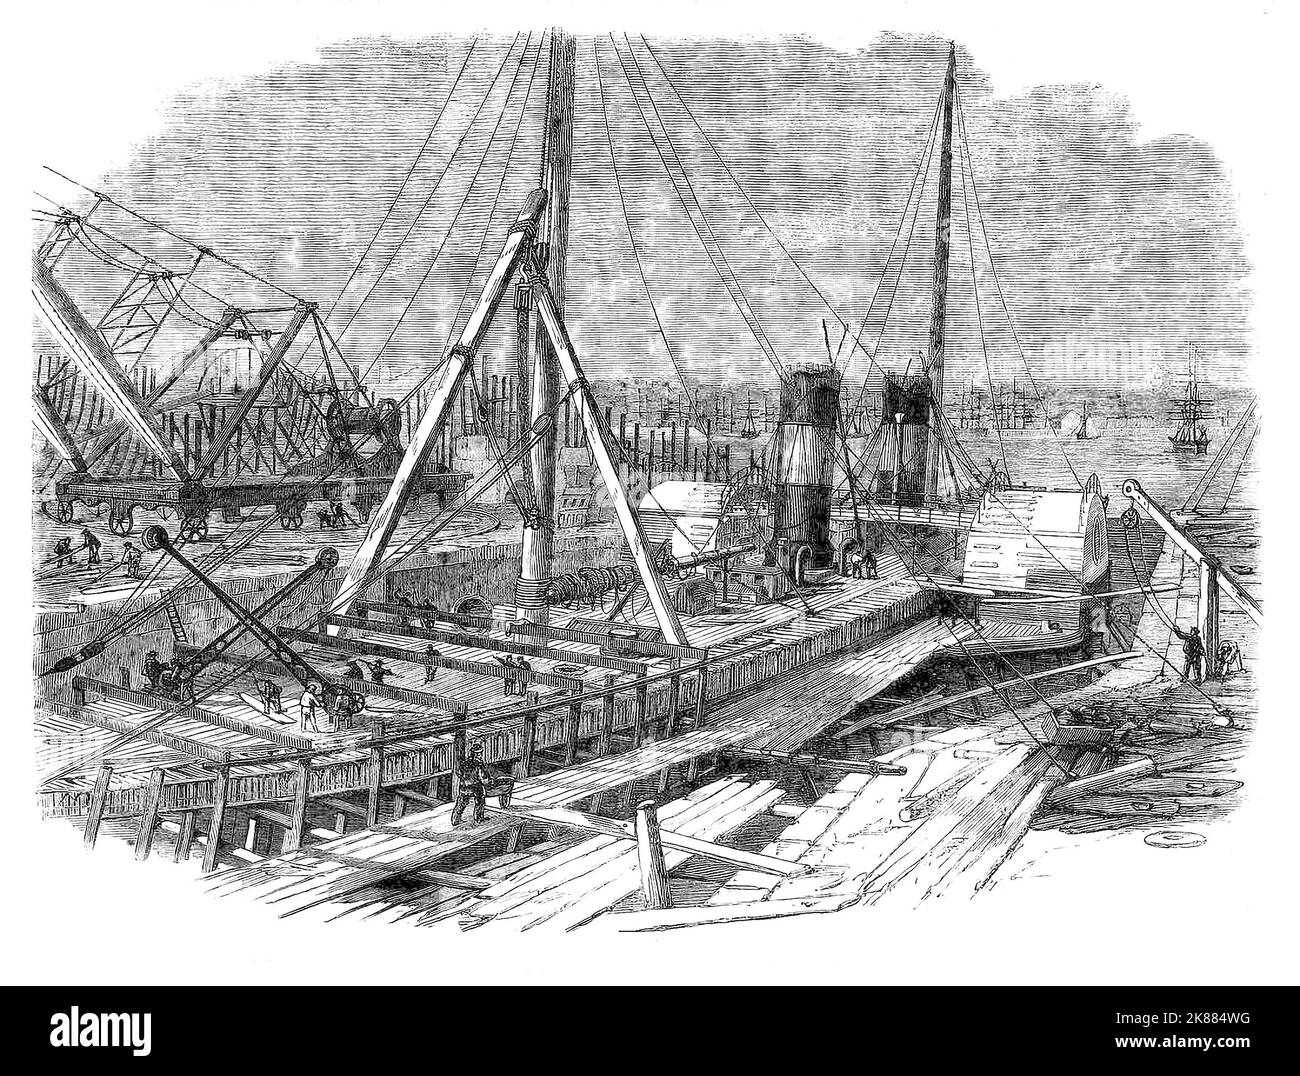 Le 'Hibernia' a Galway, Irlande, navire basé en cours de réparation dans les Birkenhead Ironworks et Docks établis en 1824. Au cours des 30 années suivantes, ils ont construit quelque 300 navires pour les États-Unis, des pays dans tout l'empire et l'amirauté donnant un emploi à 2-3 000 hommes. Au tournant du 20th siècle, est devenu Cammell Laird. Birkenhead, Merseyside, Angleterre Banque D'Images